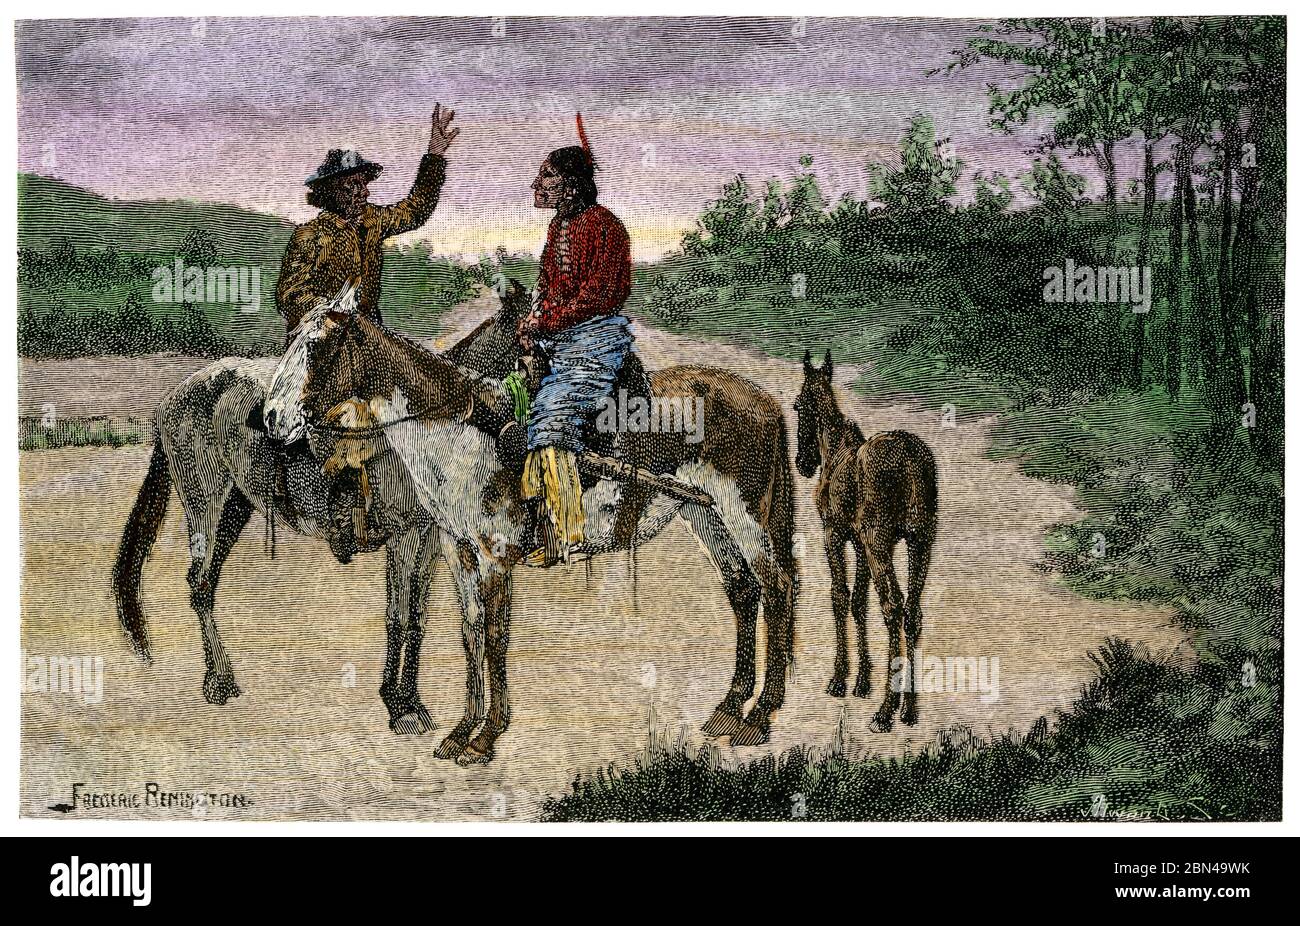 Les Américains natifs de différentes tribus utilisant le langage des signes, 1800. Une coupe de bois de couleur main d'une illustration de Frederic Remington Banque D'Images